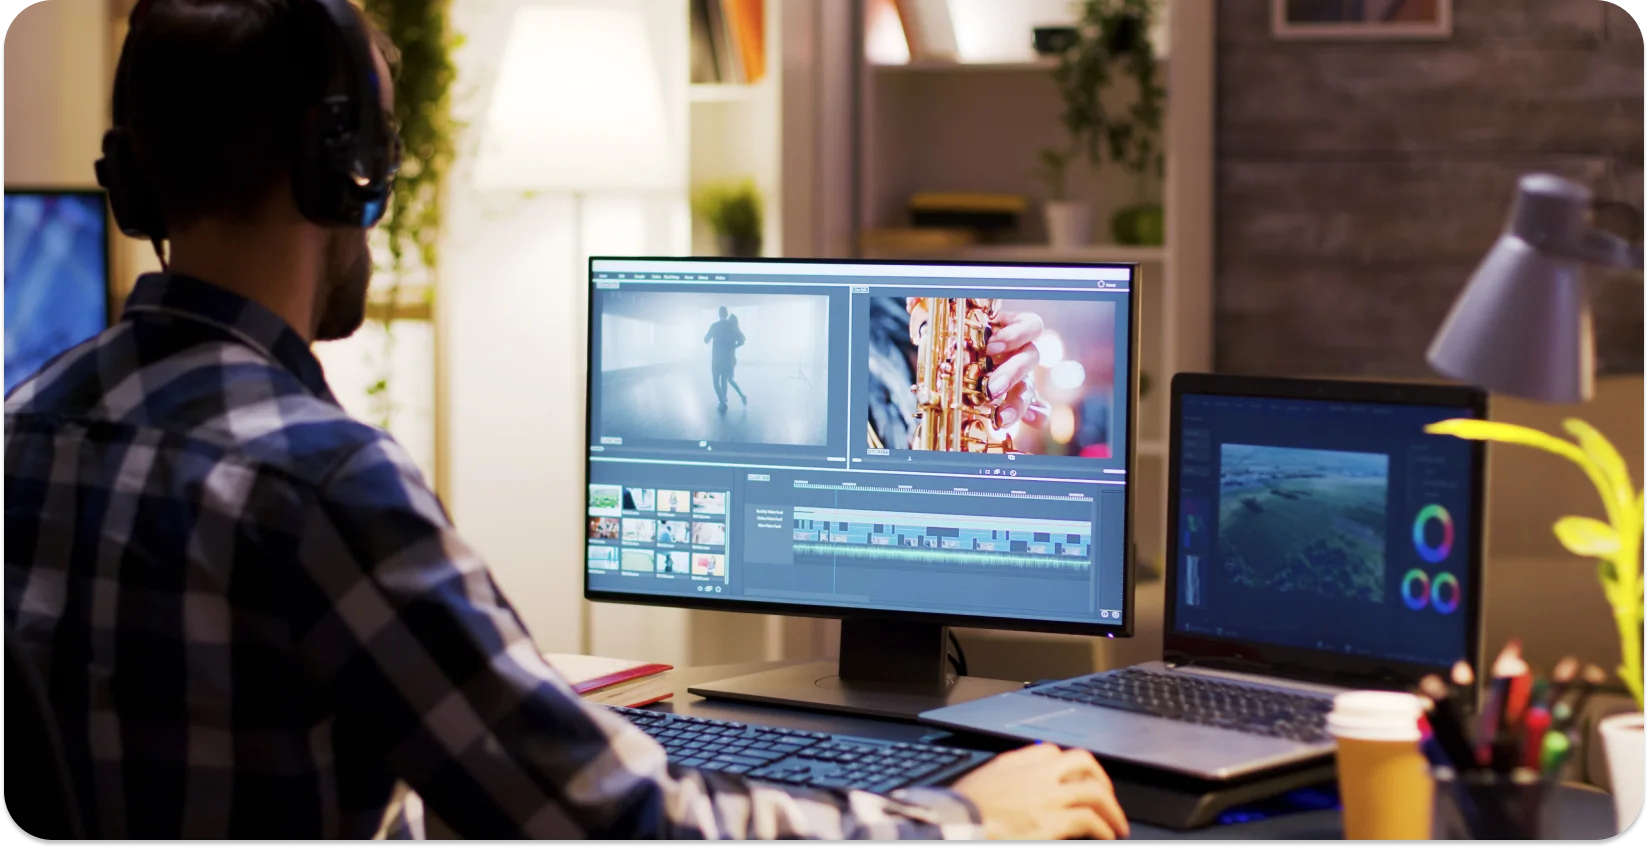 Edytor pracujący nad dodawaniem napisów do wideo przy użyciu konfiguracji z dwoma monitorami z profesjonalnym oprogramowaniem do edycji.